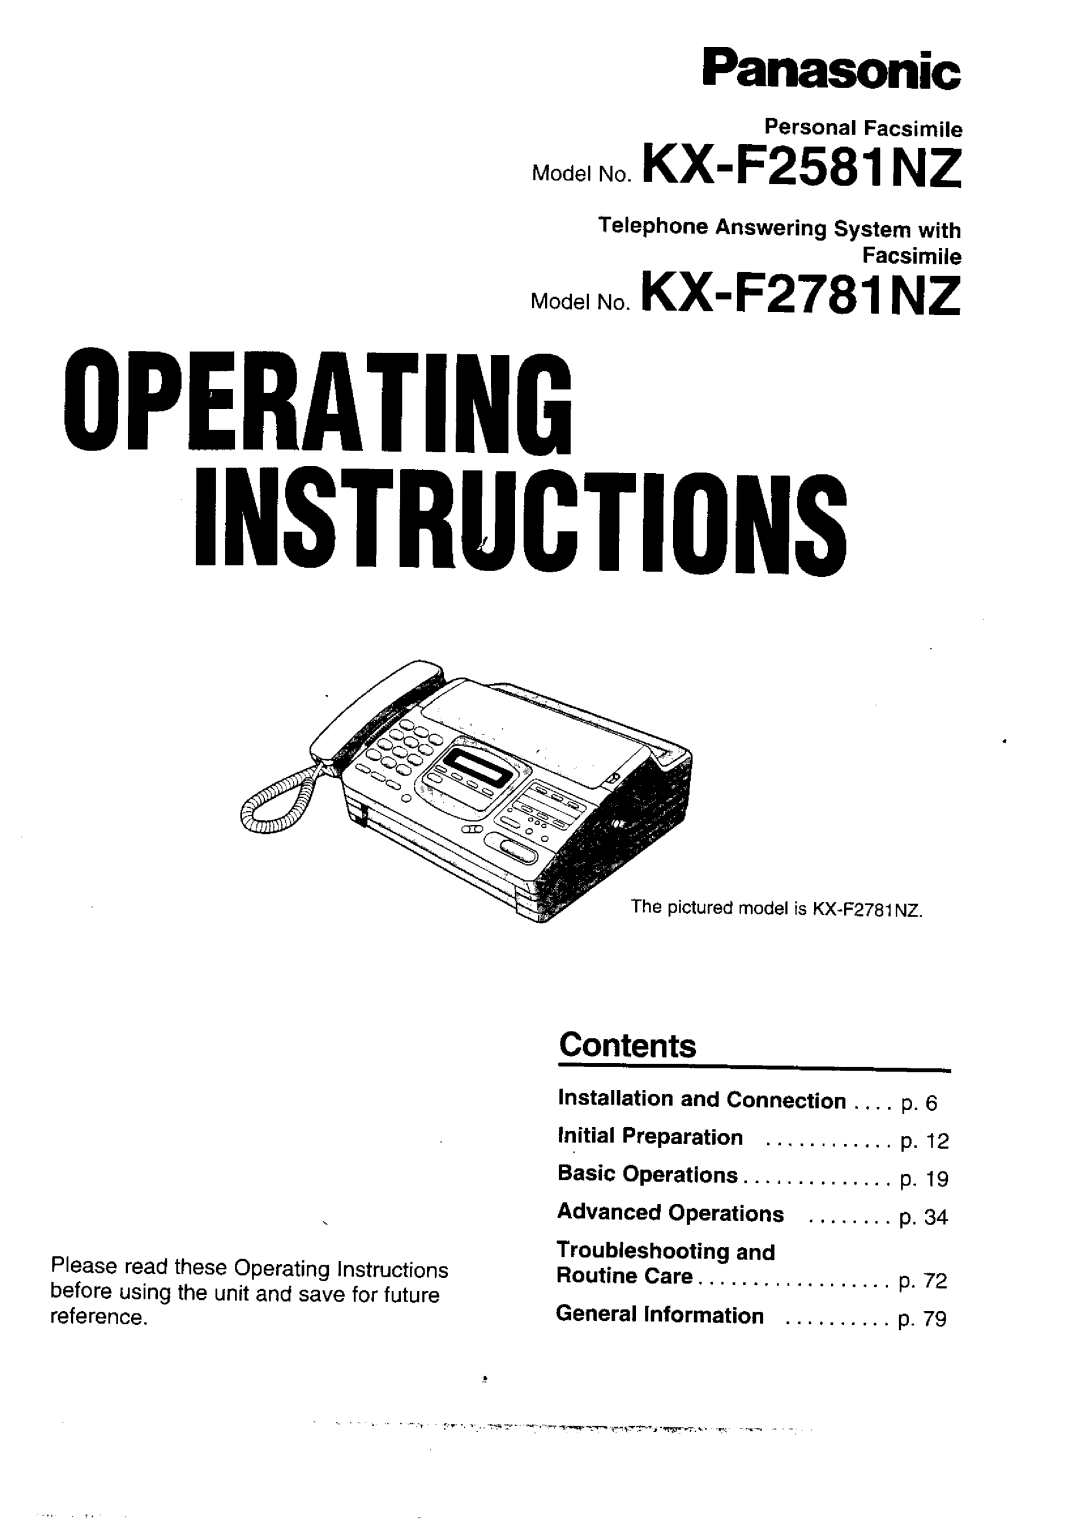 Panasonic KX-F2581NZ, KX-F2781NZ manual 